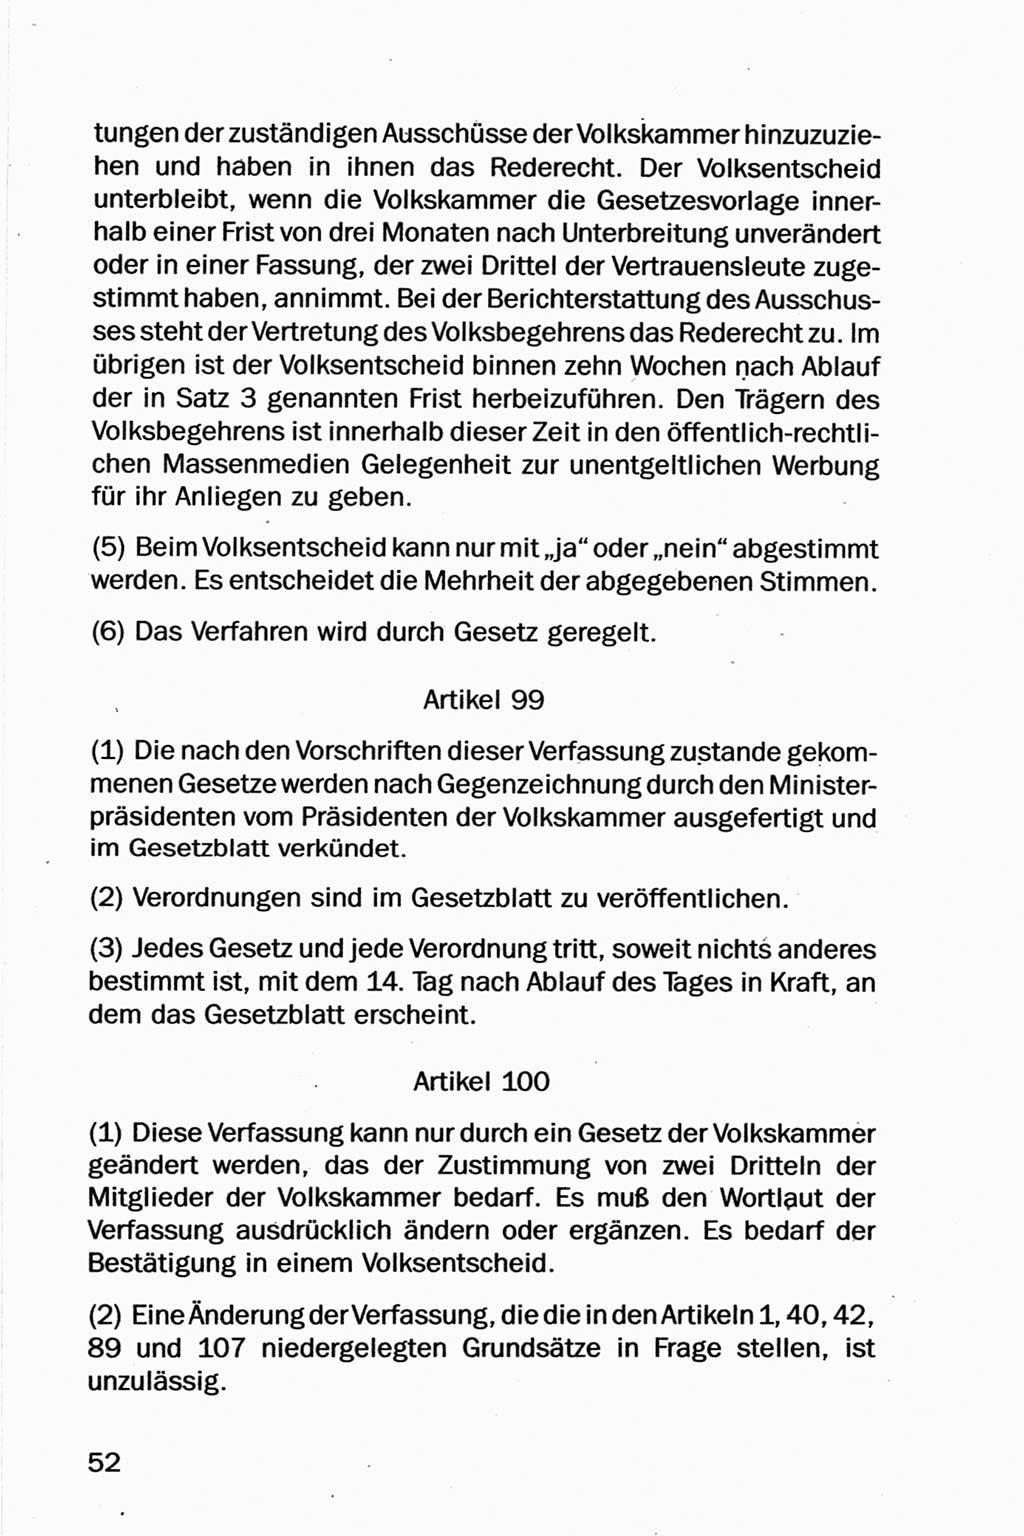 Entwurf Verfassung der Deutschen Demokratischen Republik (DDR), Arbeitsgruppe "Neue Verfassung der DDR" des Runden Tisches, Berlin 1990, Seite 52 (Entw. Verf. DDR 1990, S. 52)